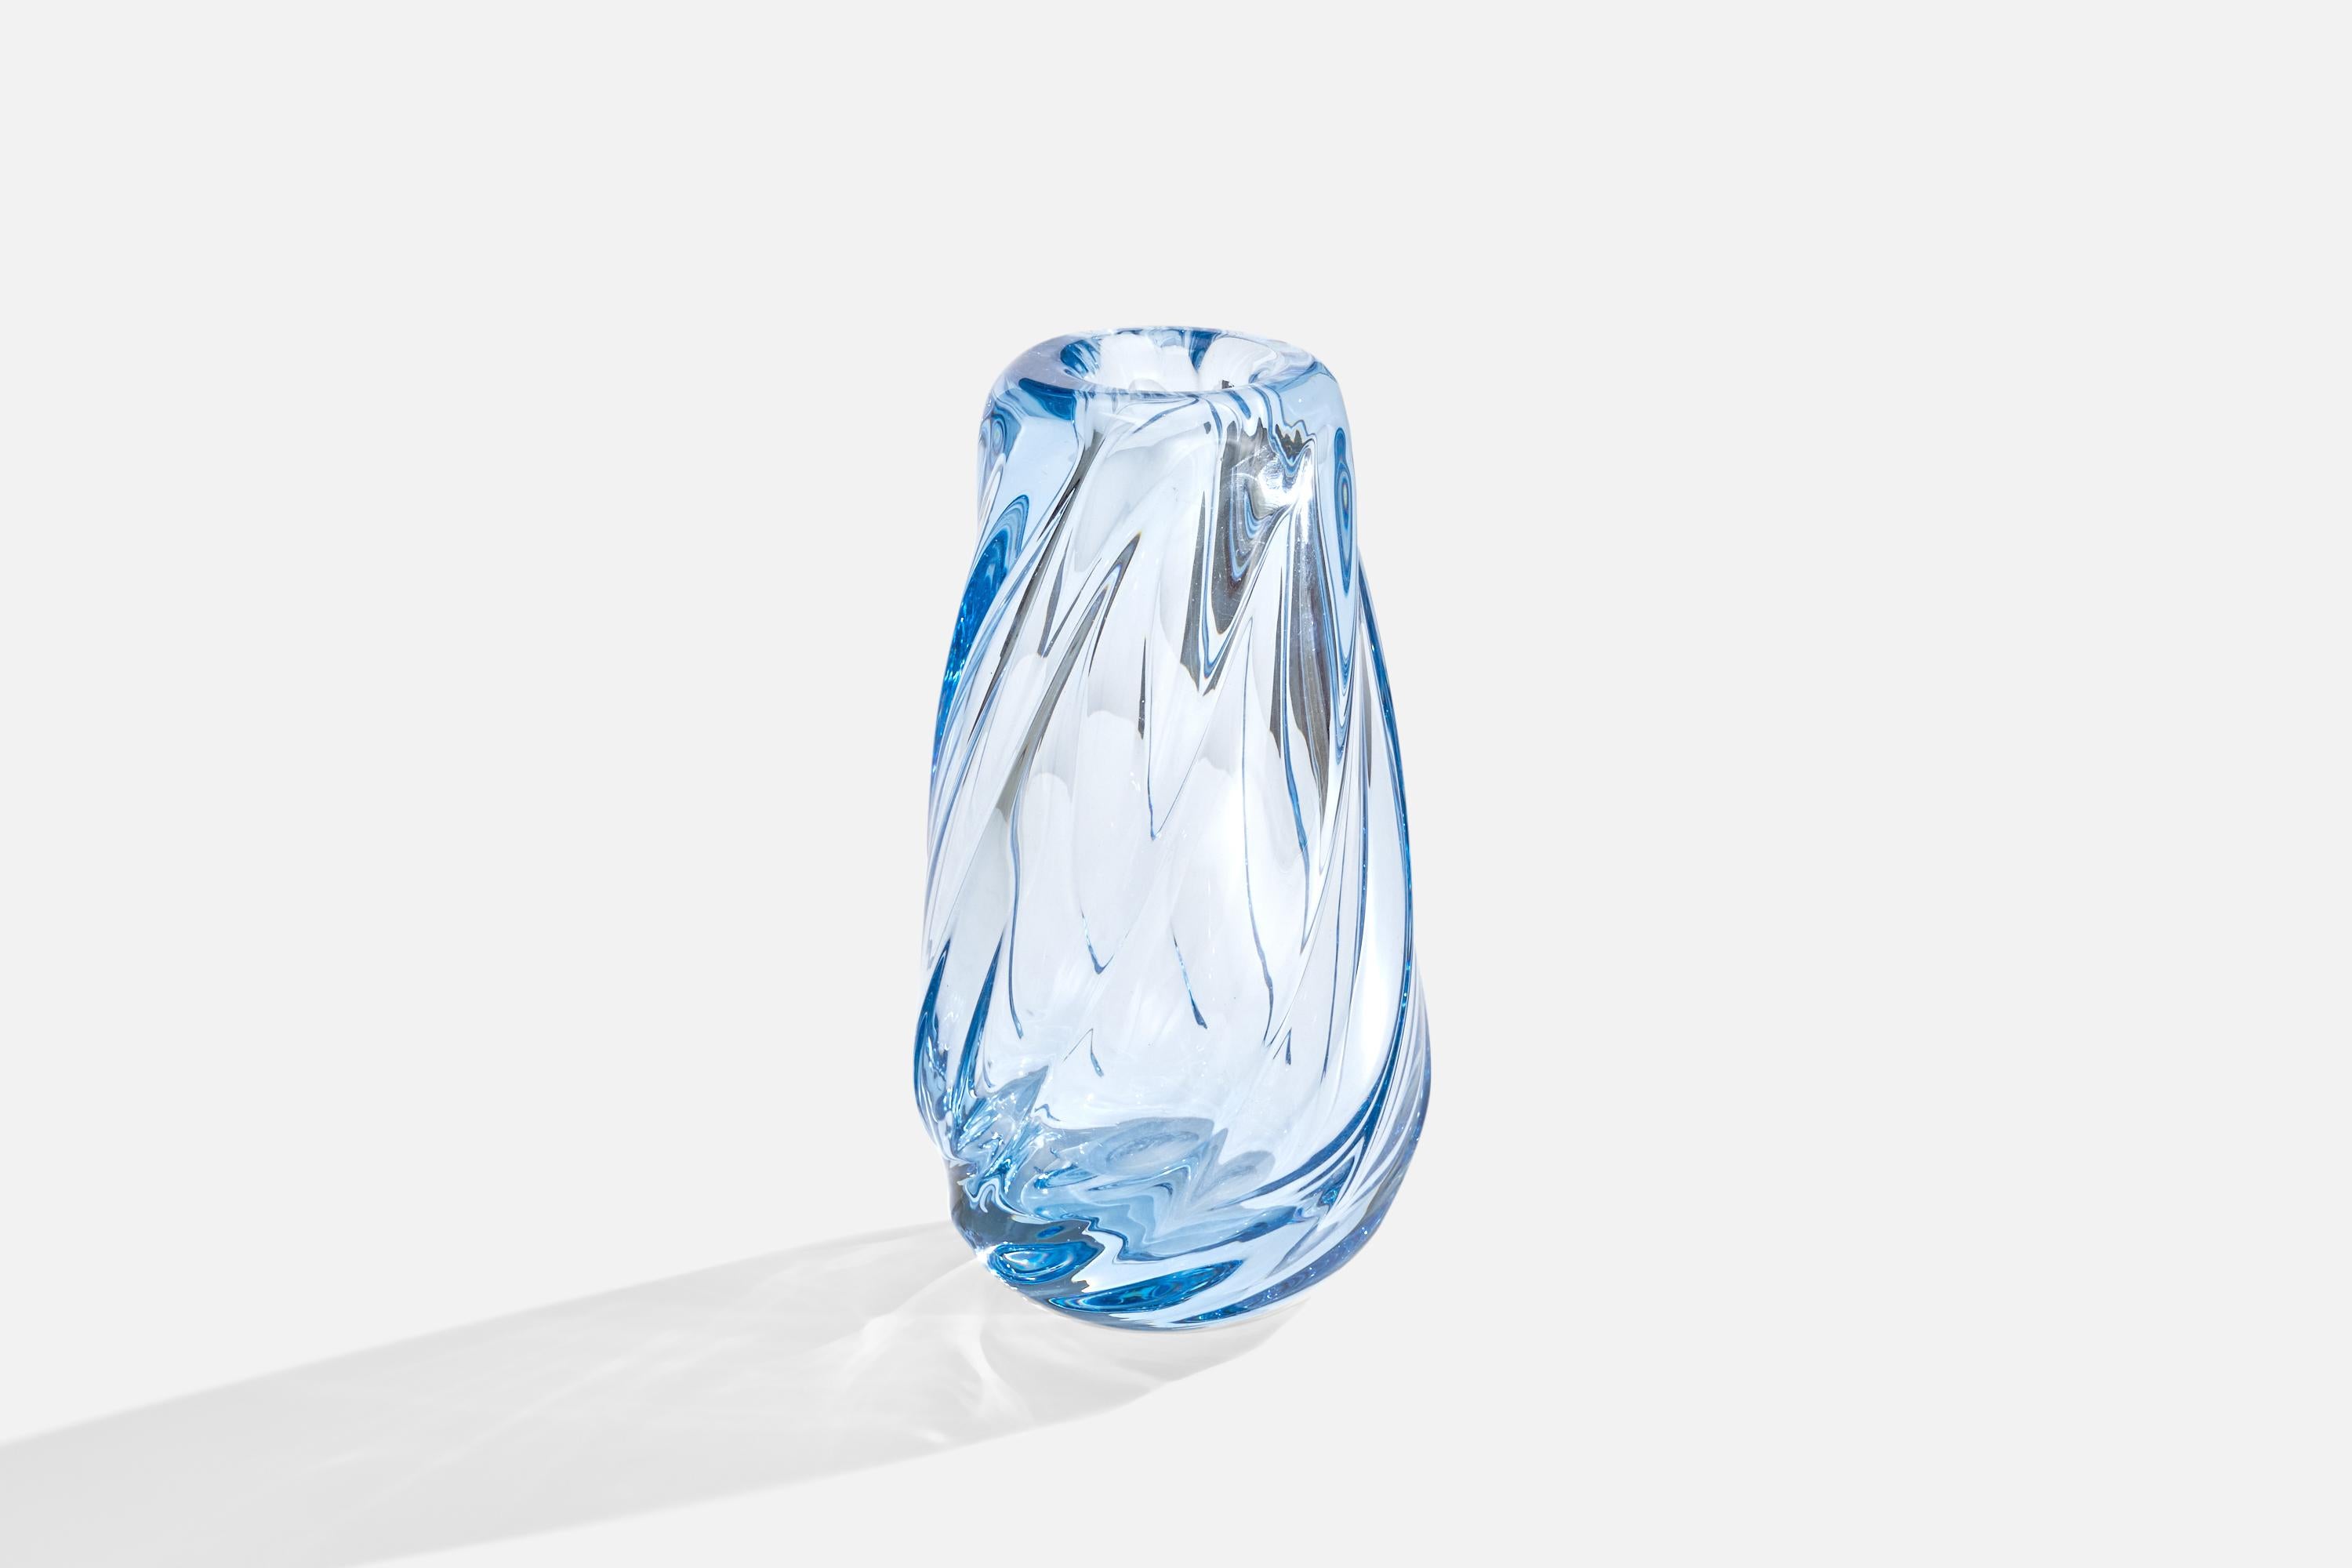 Vase en verre soufflé bleu conçu et produit en Suède, c.1940s.